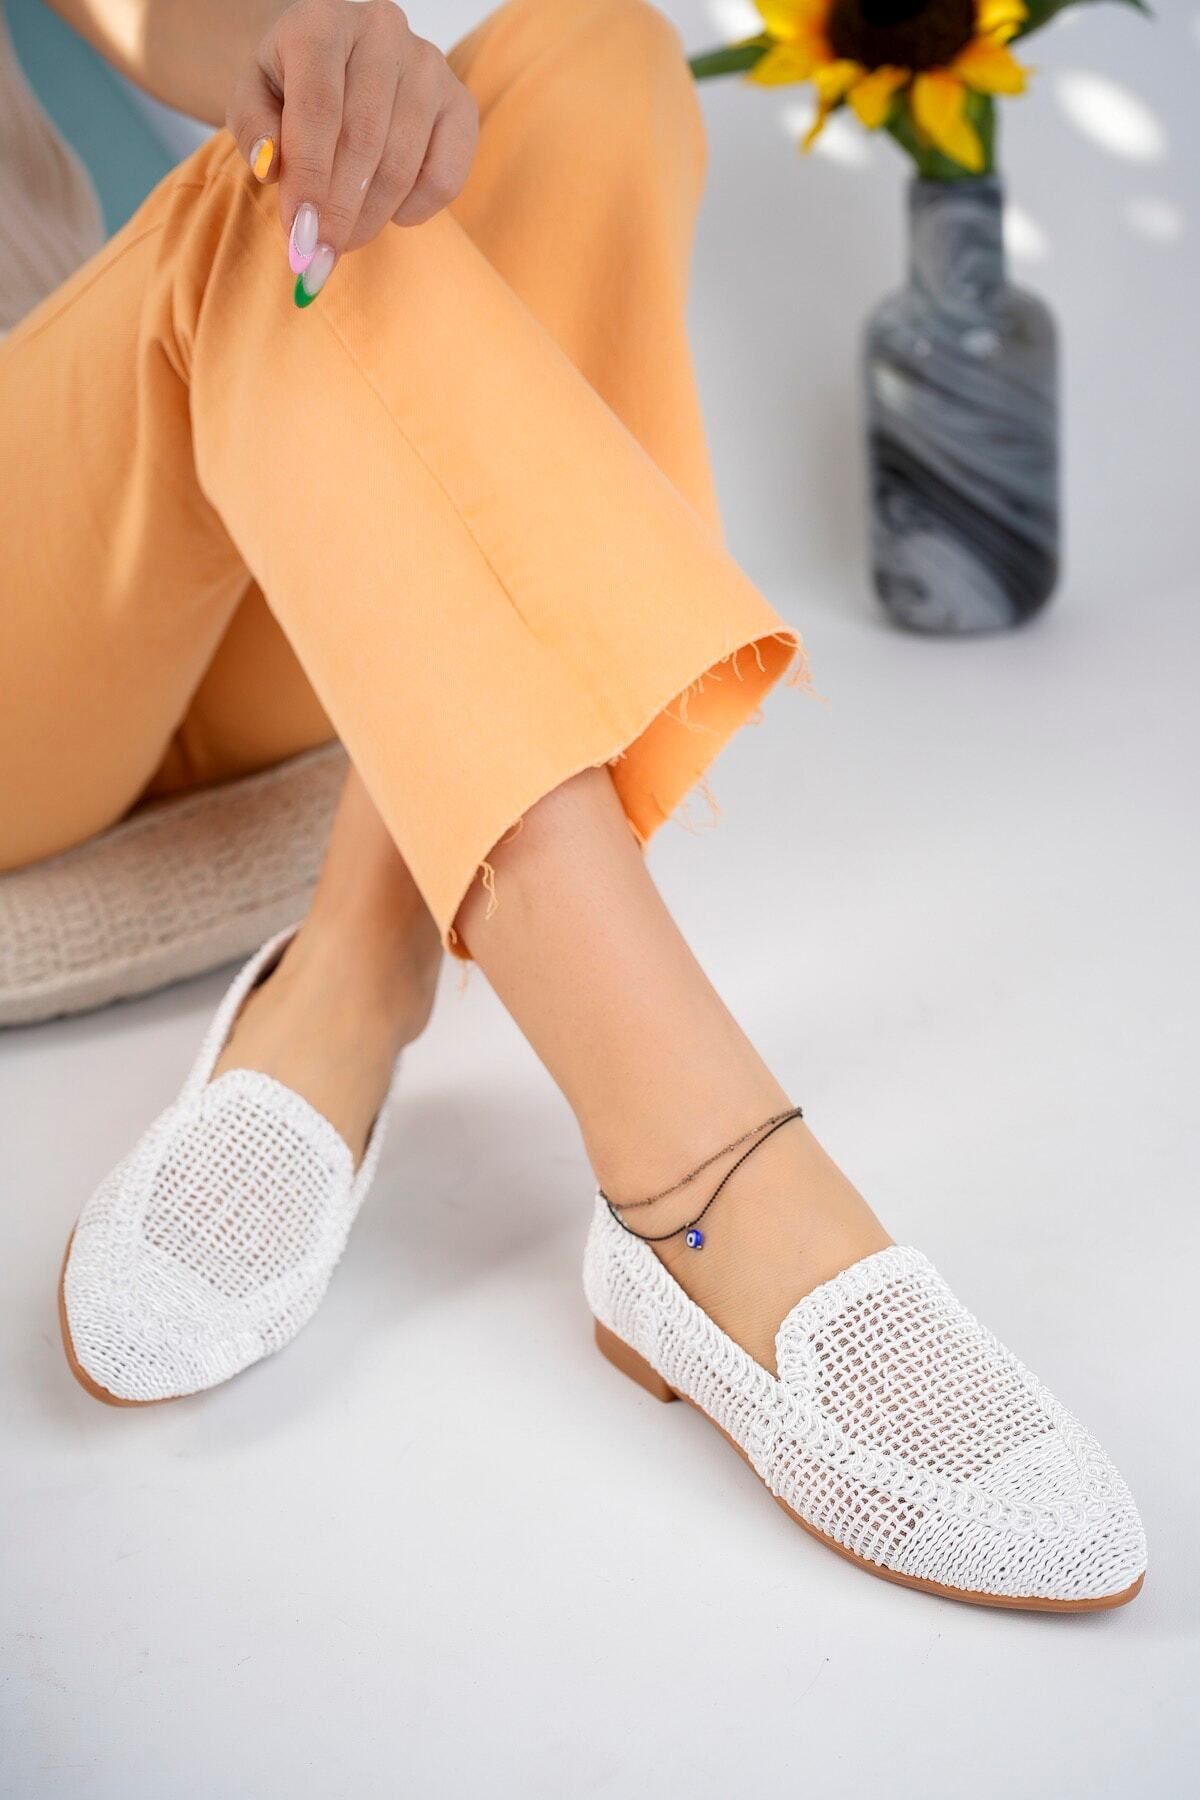 StWenn Kadın Örme Babet Ayakkabı Kadın Ayakkabı Günlük Ayakkabı Beyaz